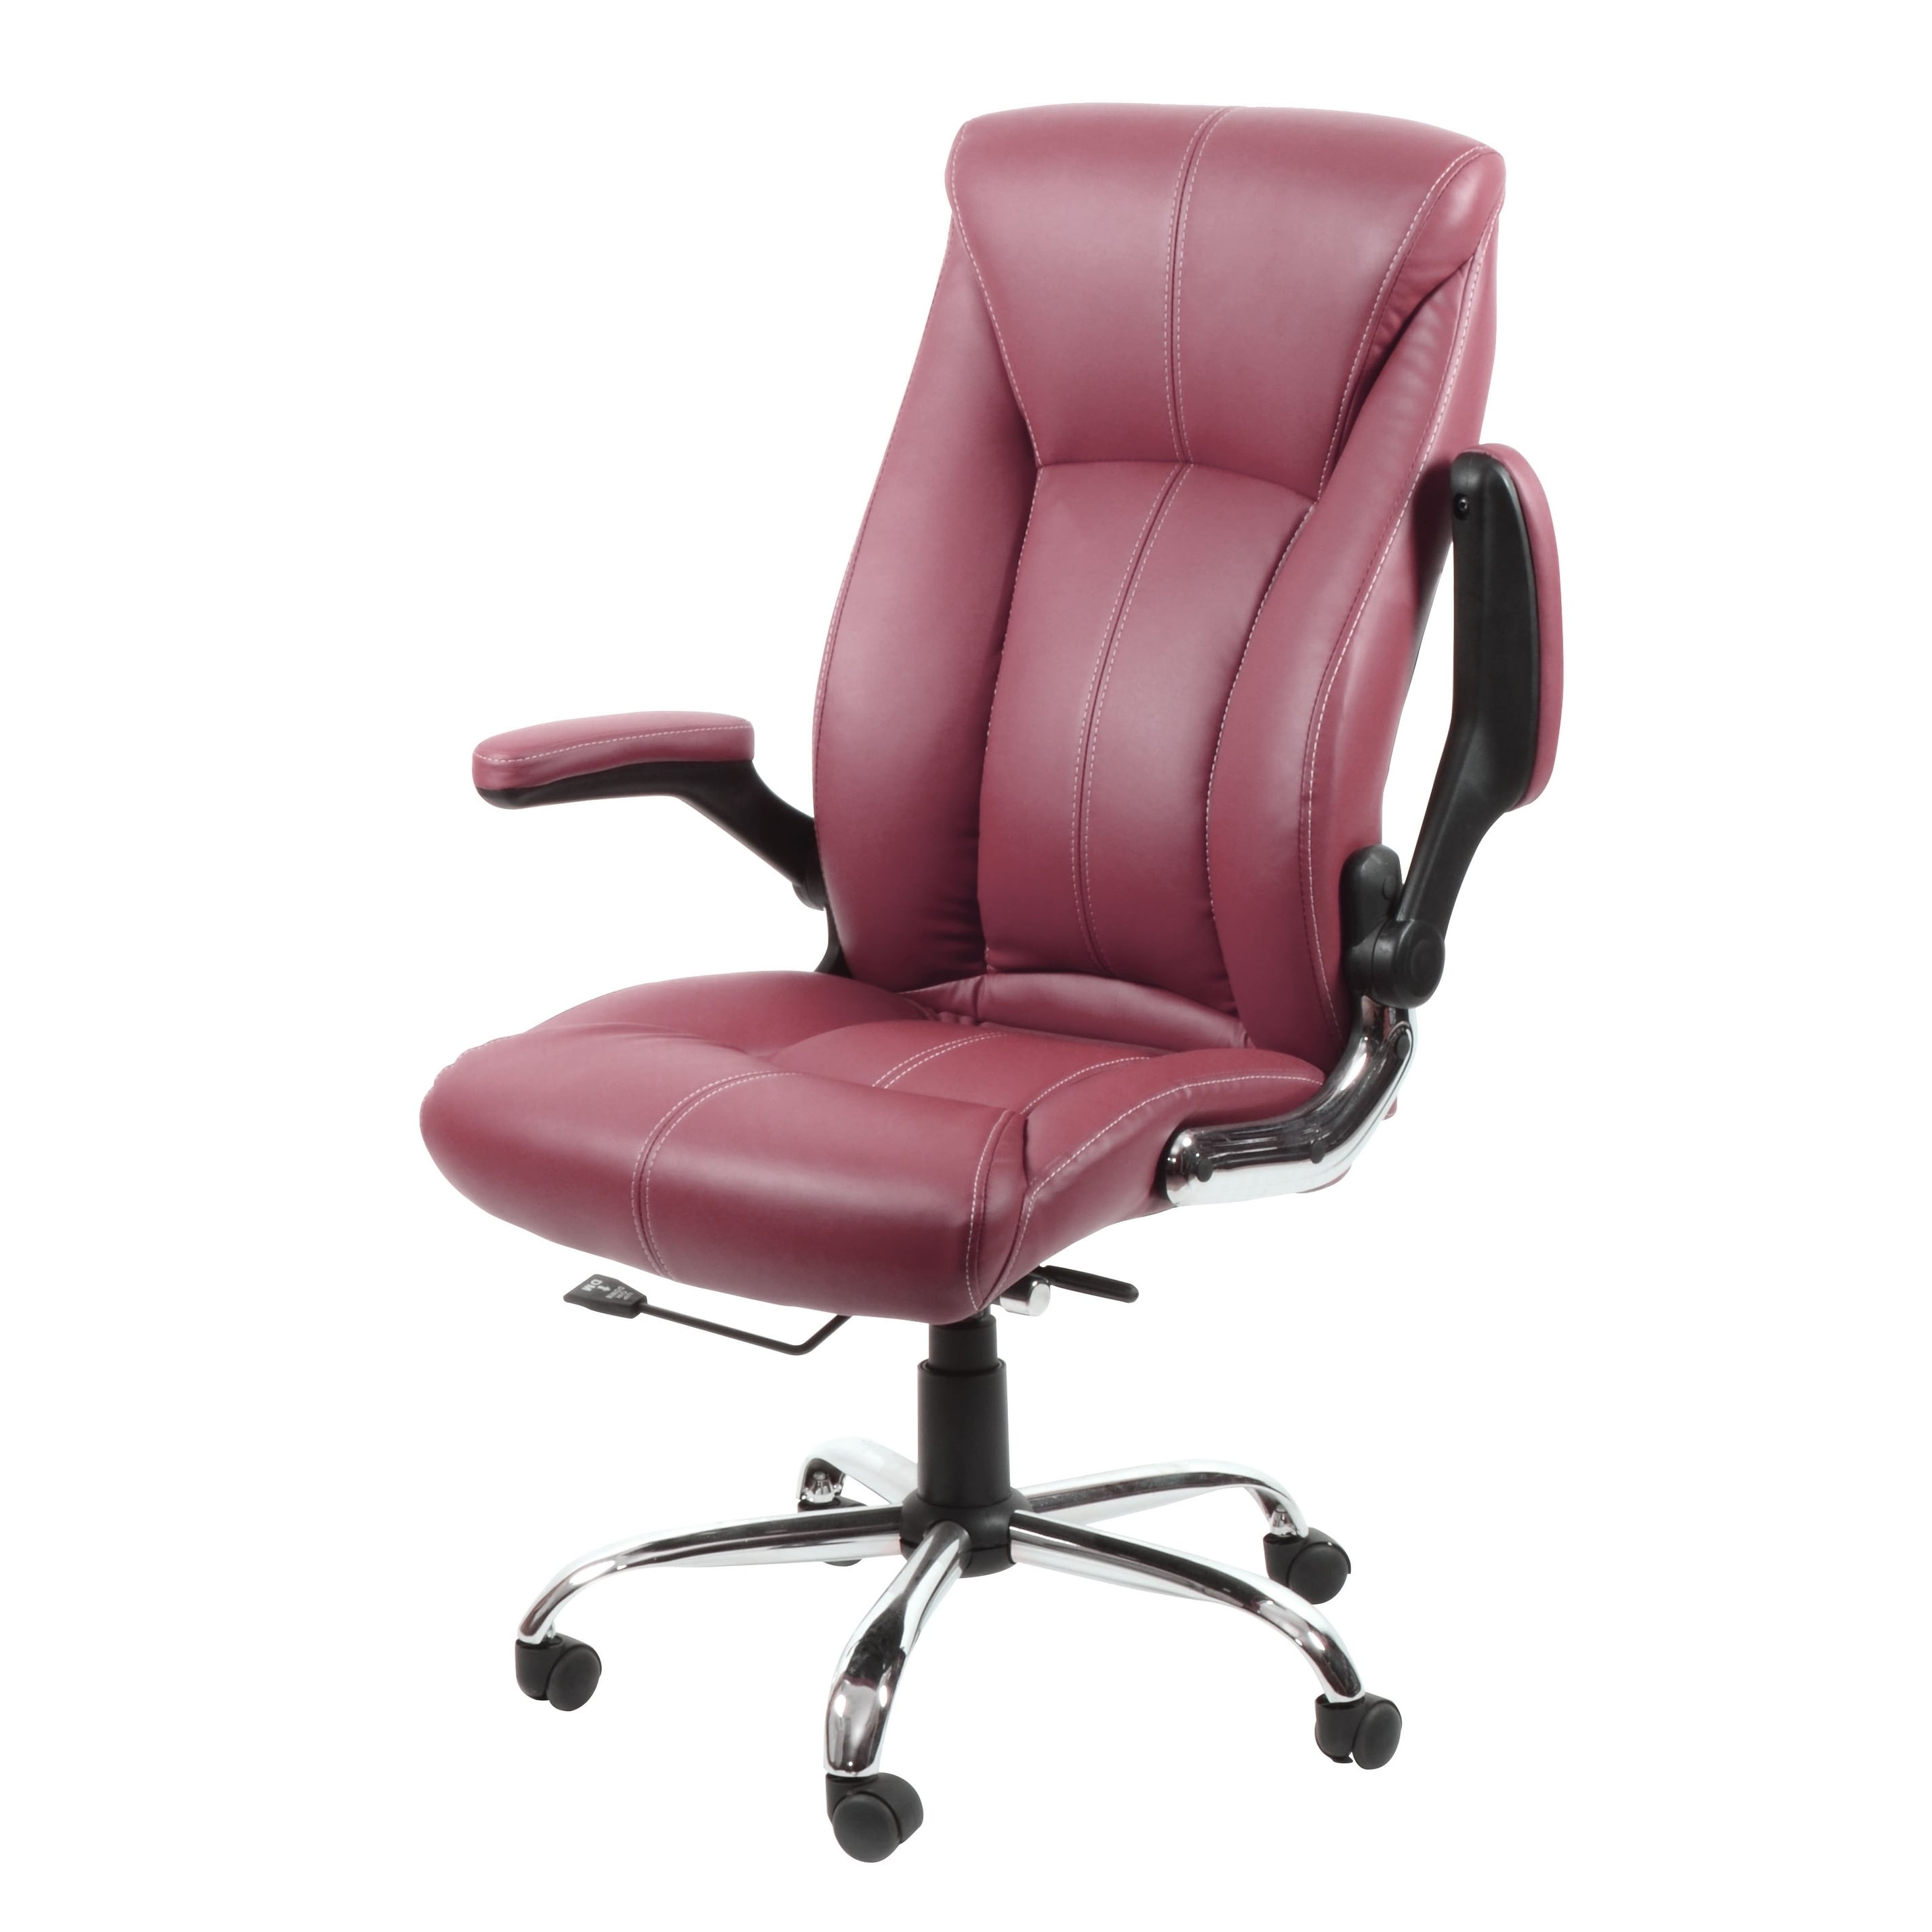 Avion Burgundy Leather Swivel Office Chair Adjustable Armrest Computer Desk Task N A On Sale Overstock 28877155